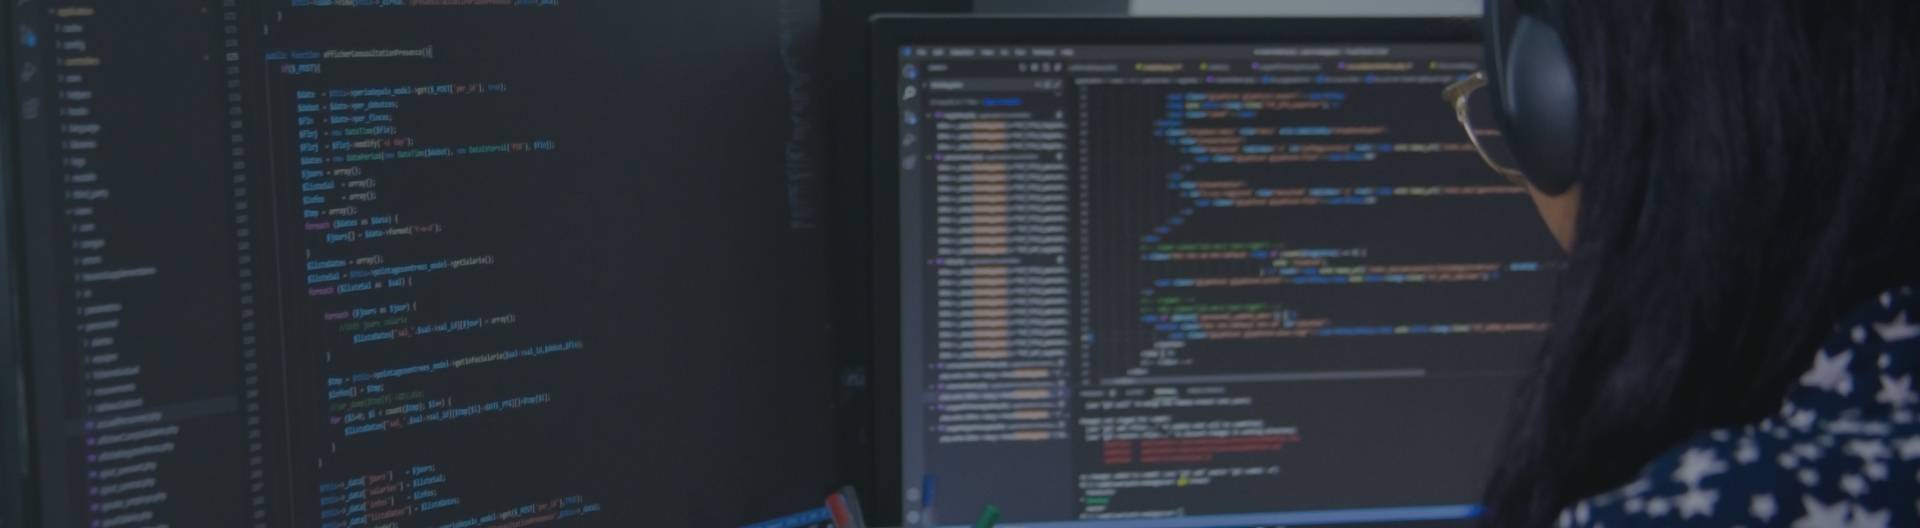  Une femme en train de faire du développement avec un écran affichant les codes source.